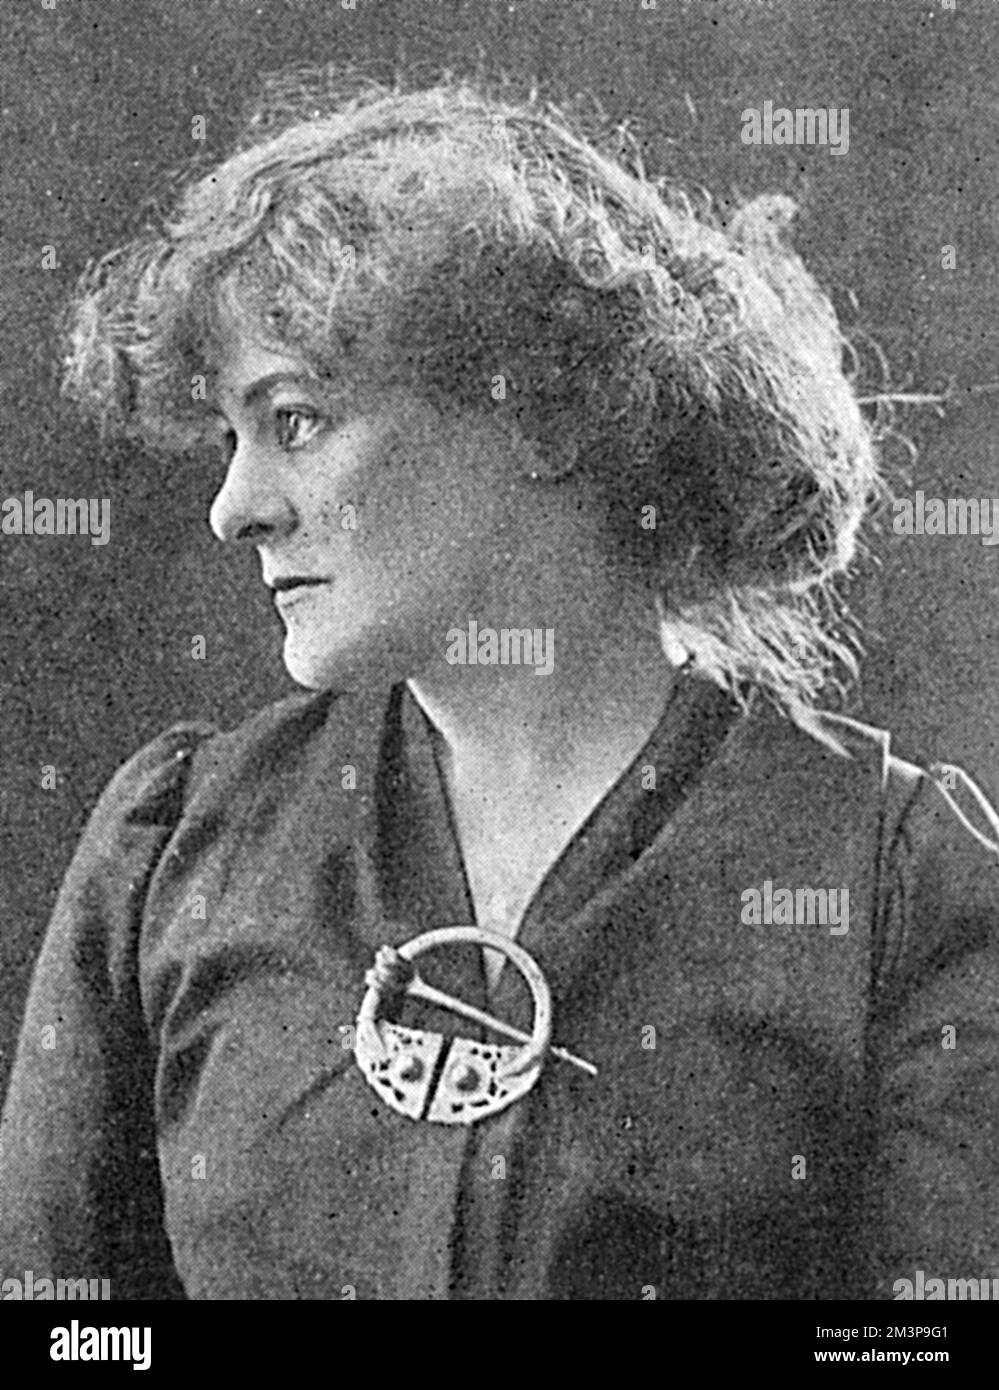 MAUD GONNE irische Schauspielerin und Patriot, das Bild, das sie zu der Zeit, als sie verhaftet wurde, im Zusammenhang mit dem kürzlich entdeckten Sinn Fein deutschen Komplott in Irland. Ihr Mann wurde als Rebell im Aufstieg von Dublin 1916 hingerichtet. Datum: 1918 Stockfoto